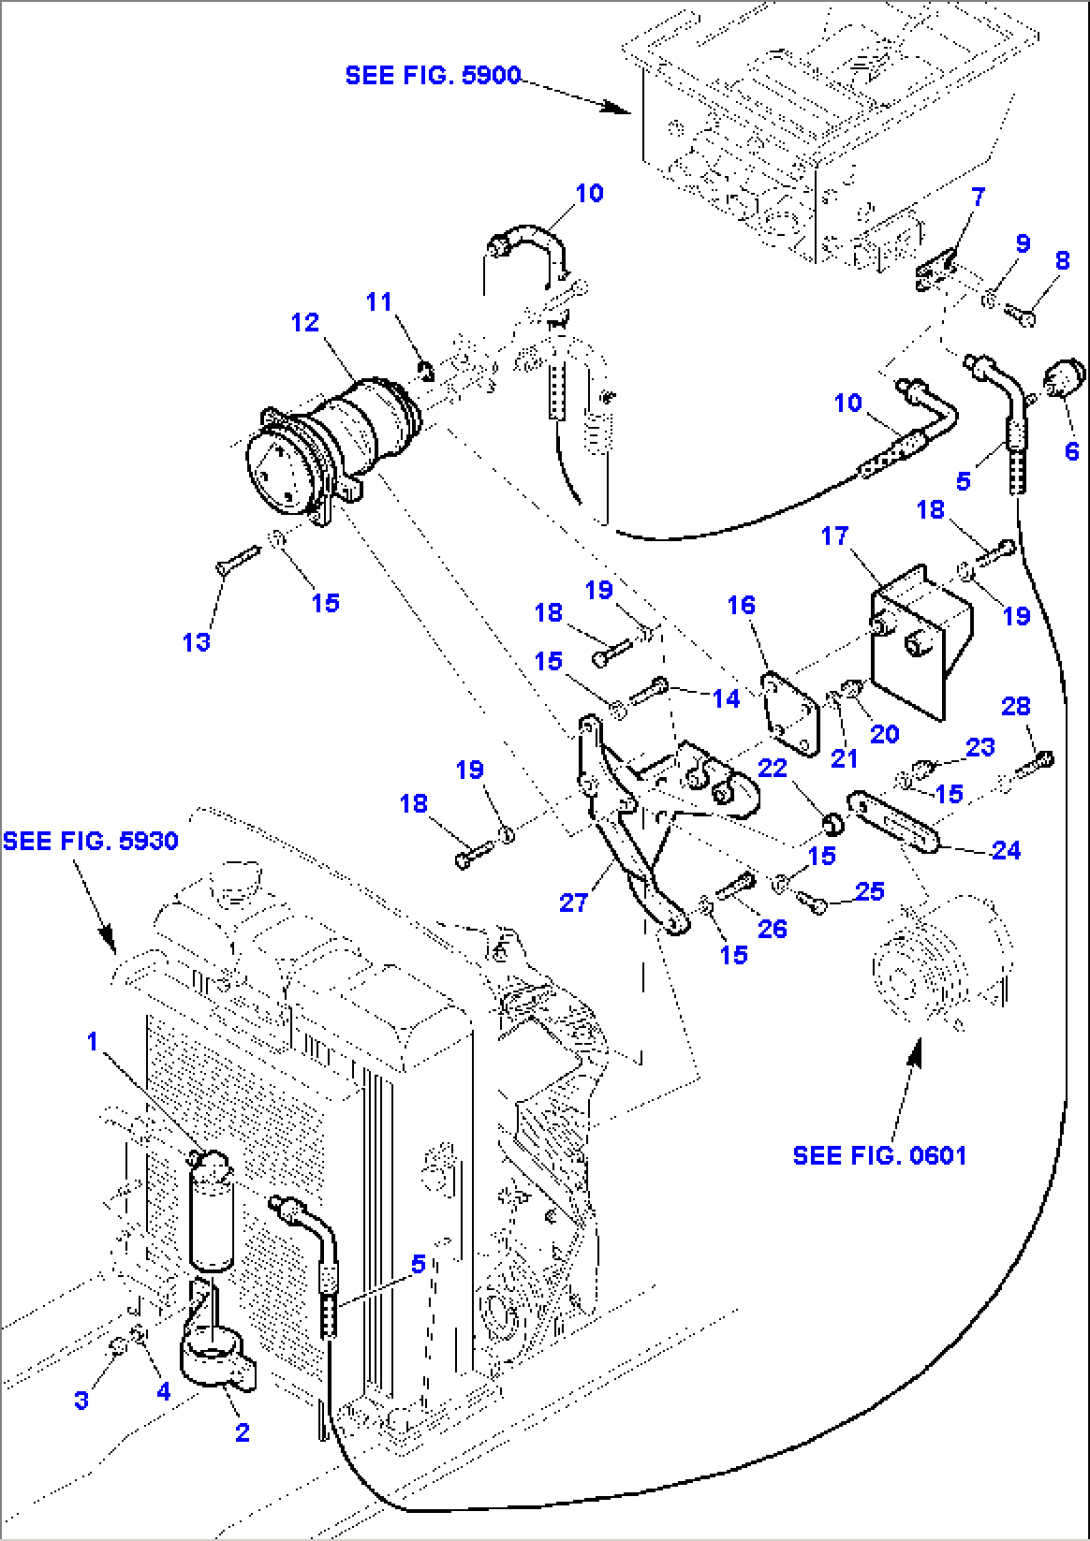 MOTOR AIR BLENDING SYSTEM (2/2)